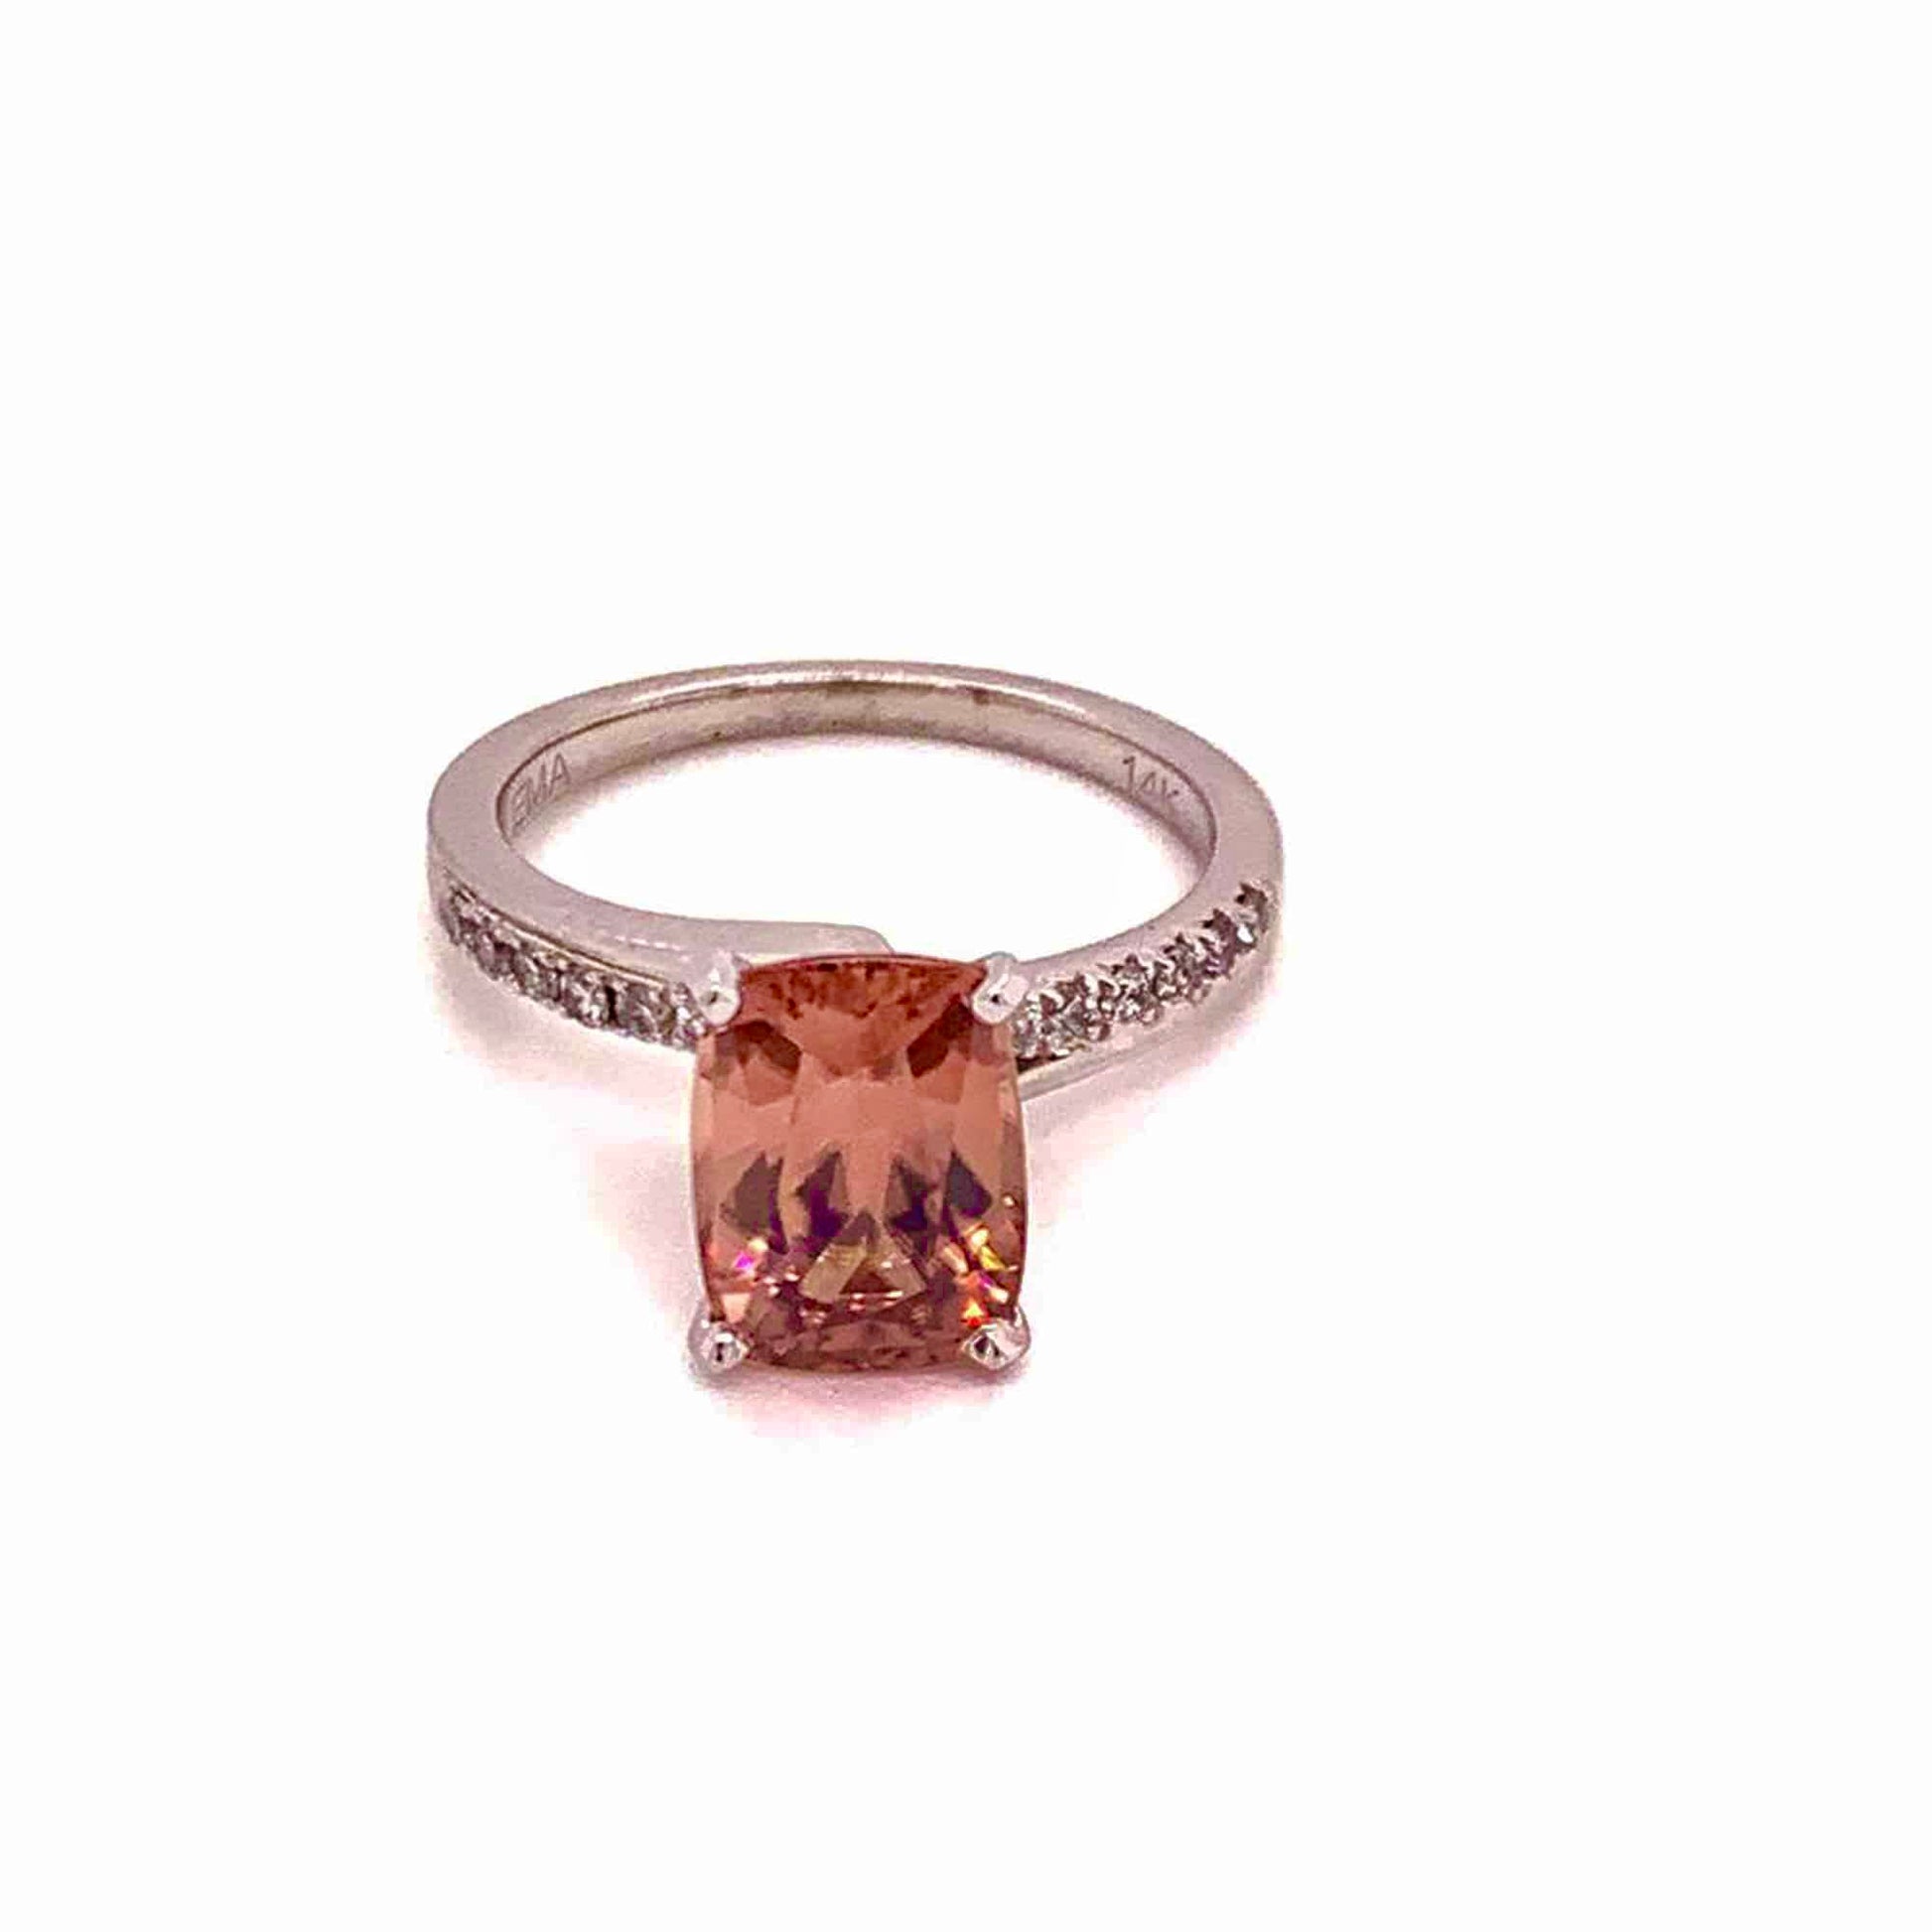 Diamond Zircon Ring 14k Gold Large 4.45 TCW Women Certified $3,100 912276 - Certified Fine Jewelry